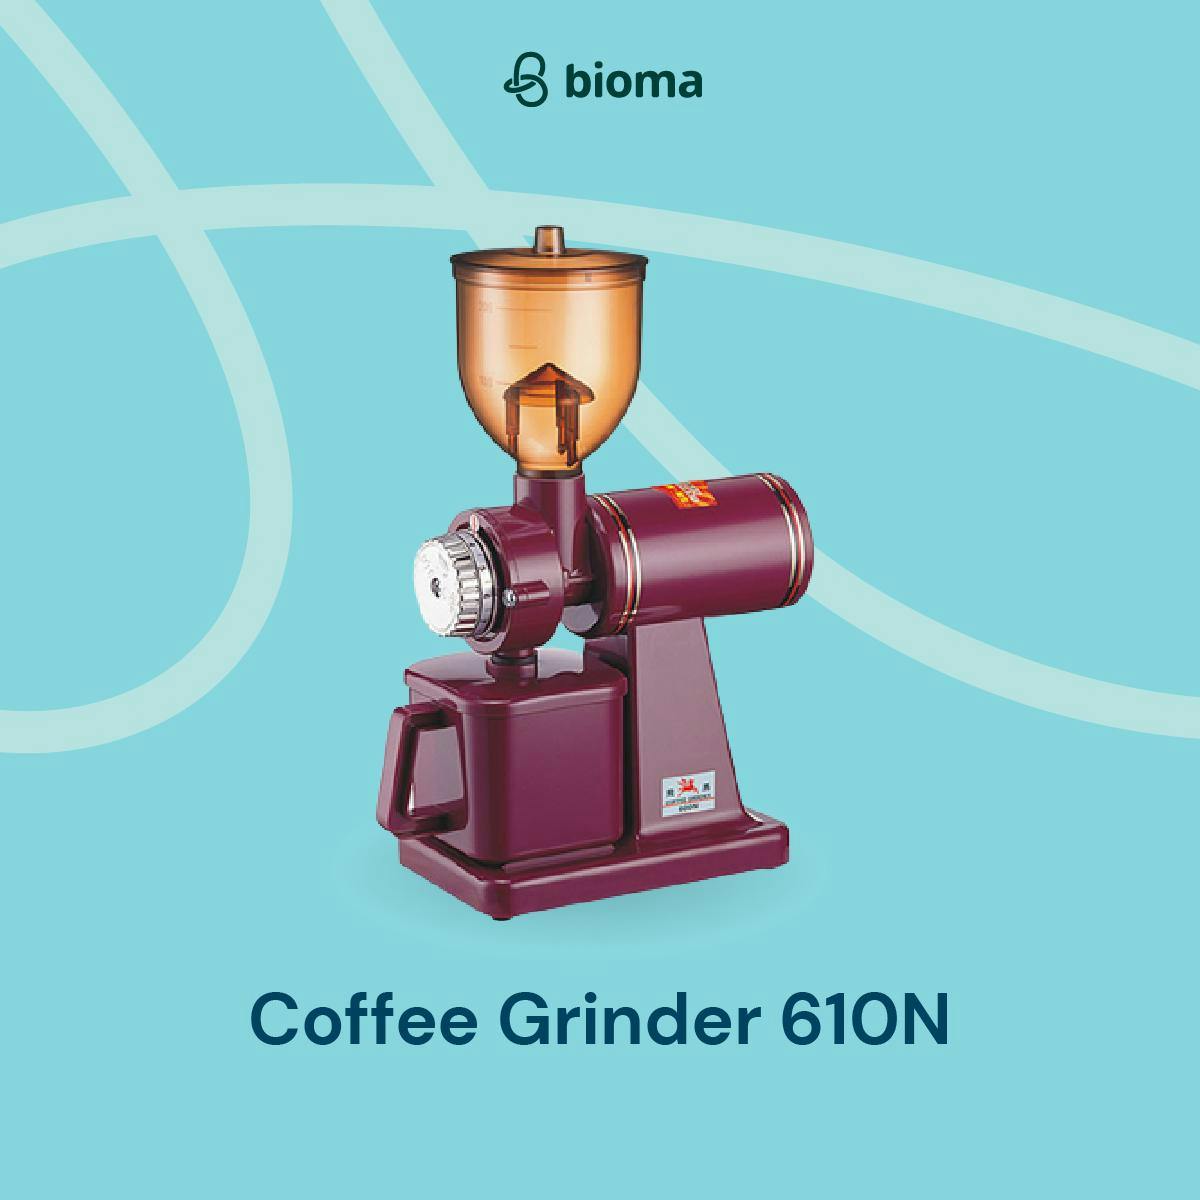 Coffee Grinder 610N